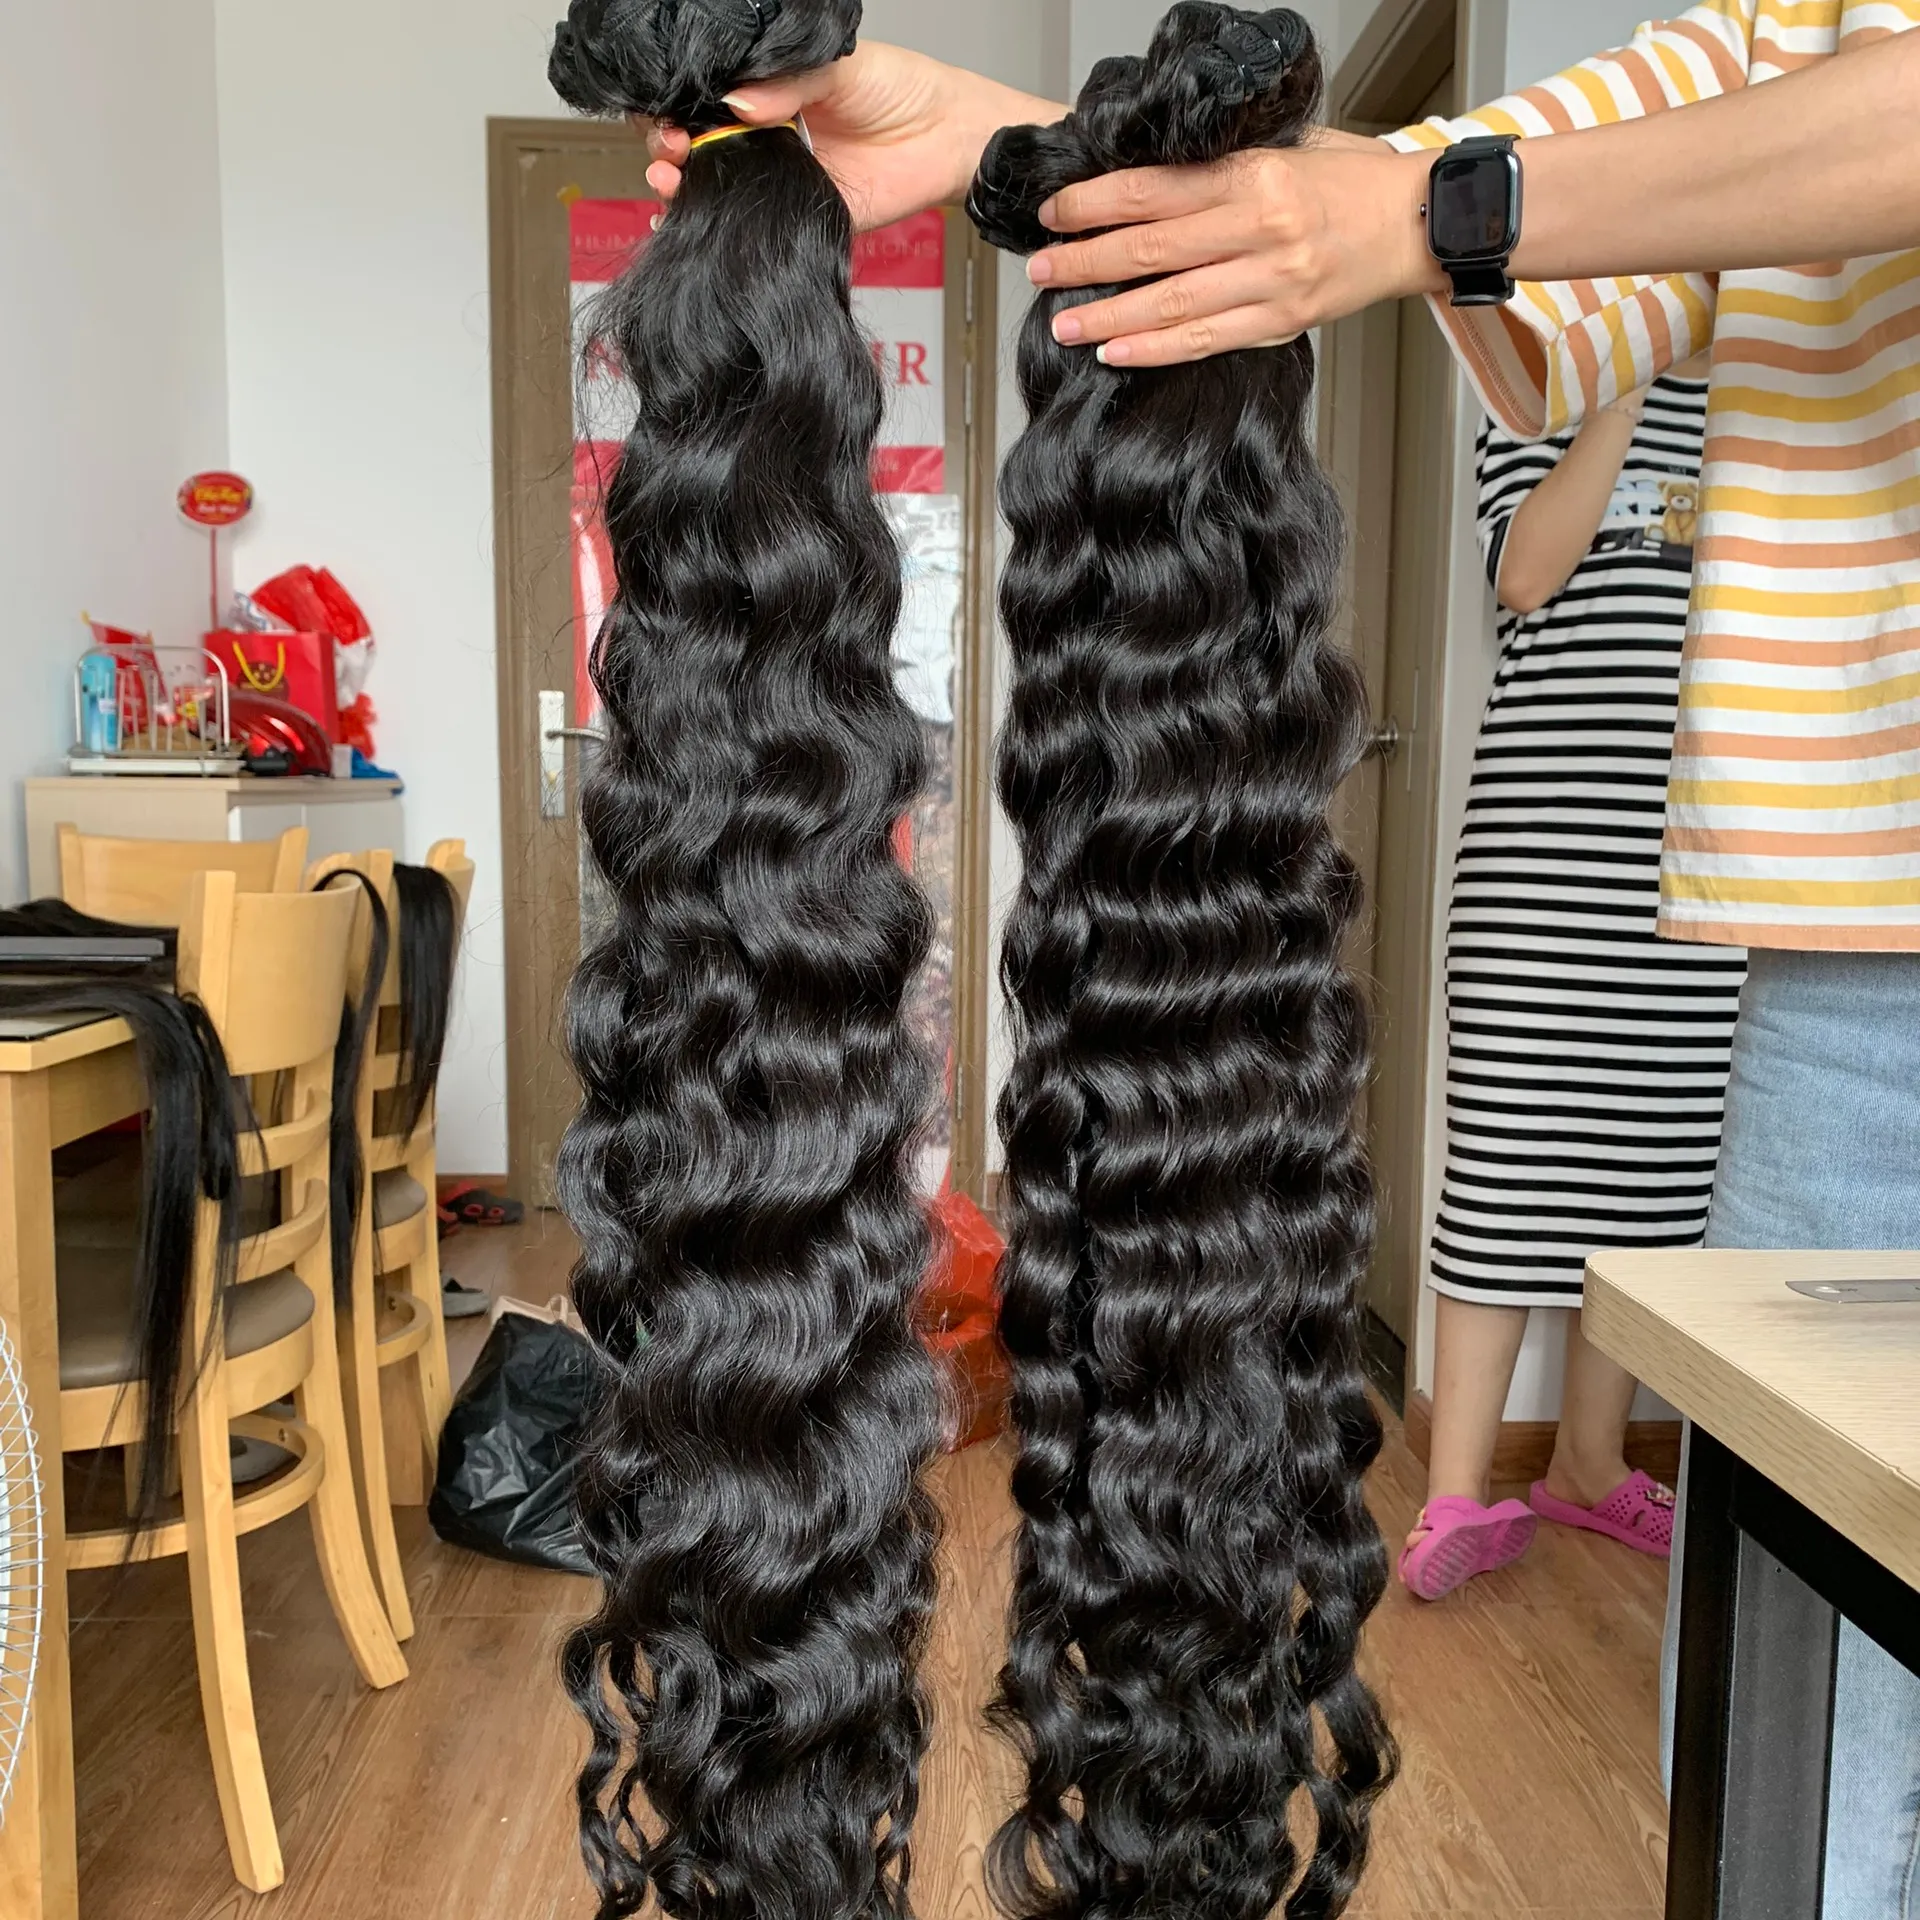 Versand bereit Kambodscha nisches Haar Curly Tape Bundle Verschluss Großhandel Ein Spender Unverarbeitete Raw Vietnamese Hair Exports Factory